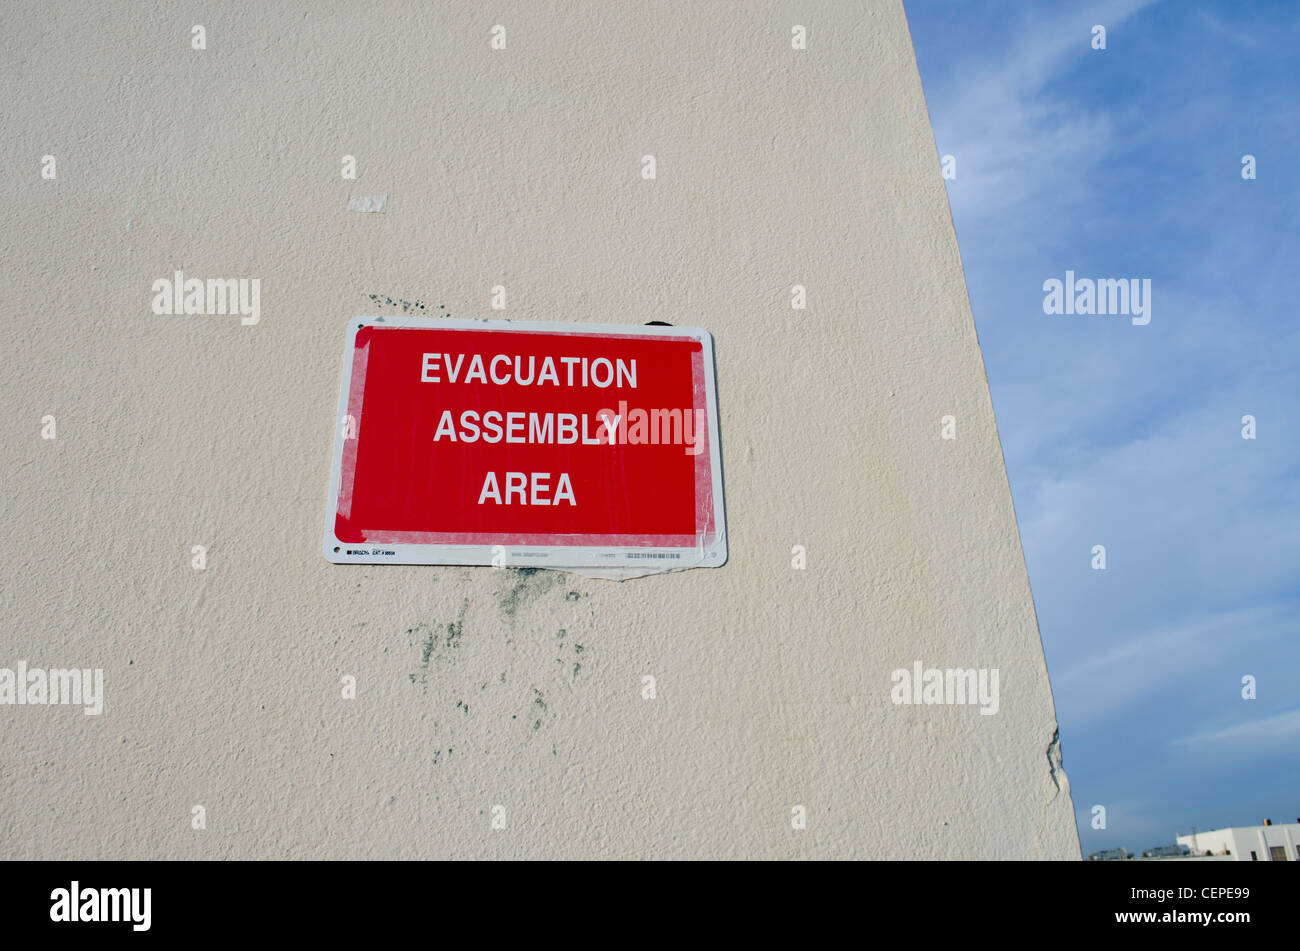 Zone de l'ensemble d'évacuation rouge signe enregistré sur un mur Banque D'Images